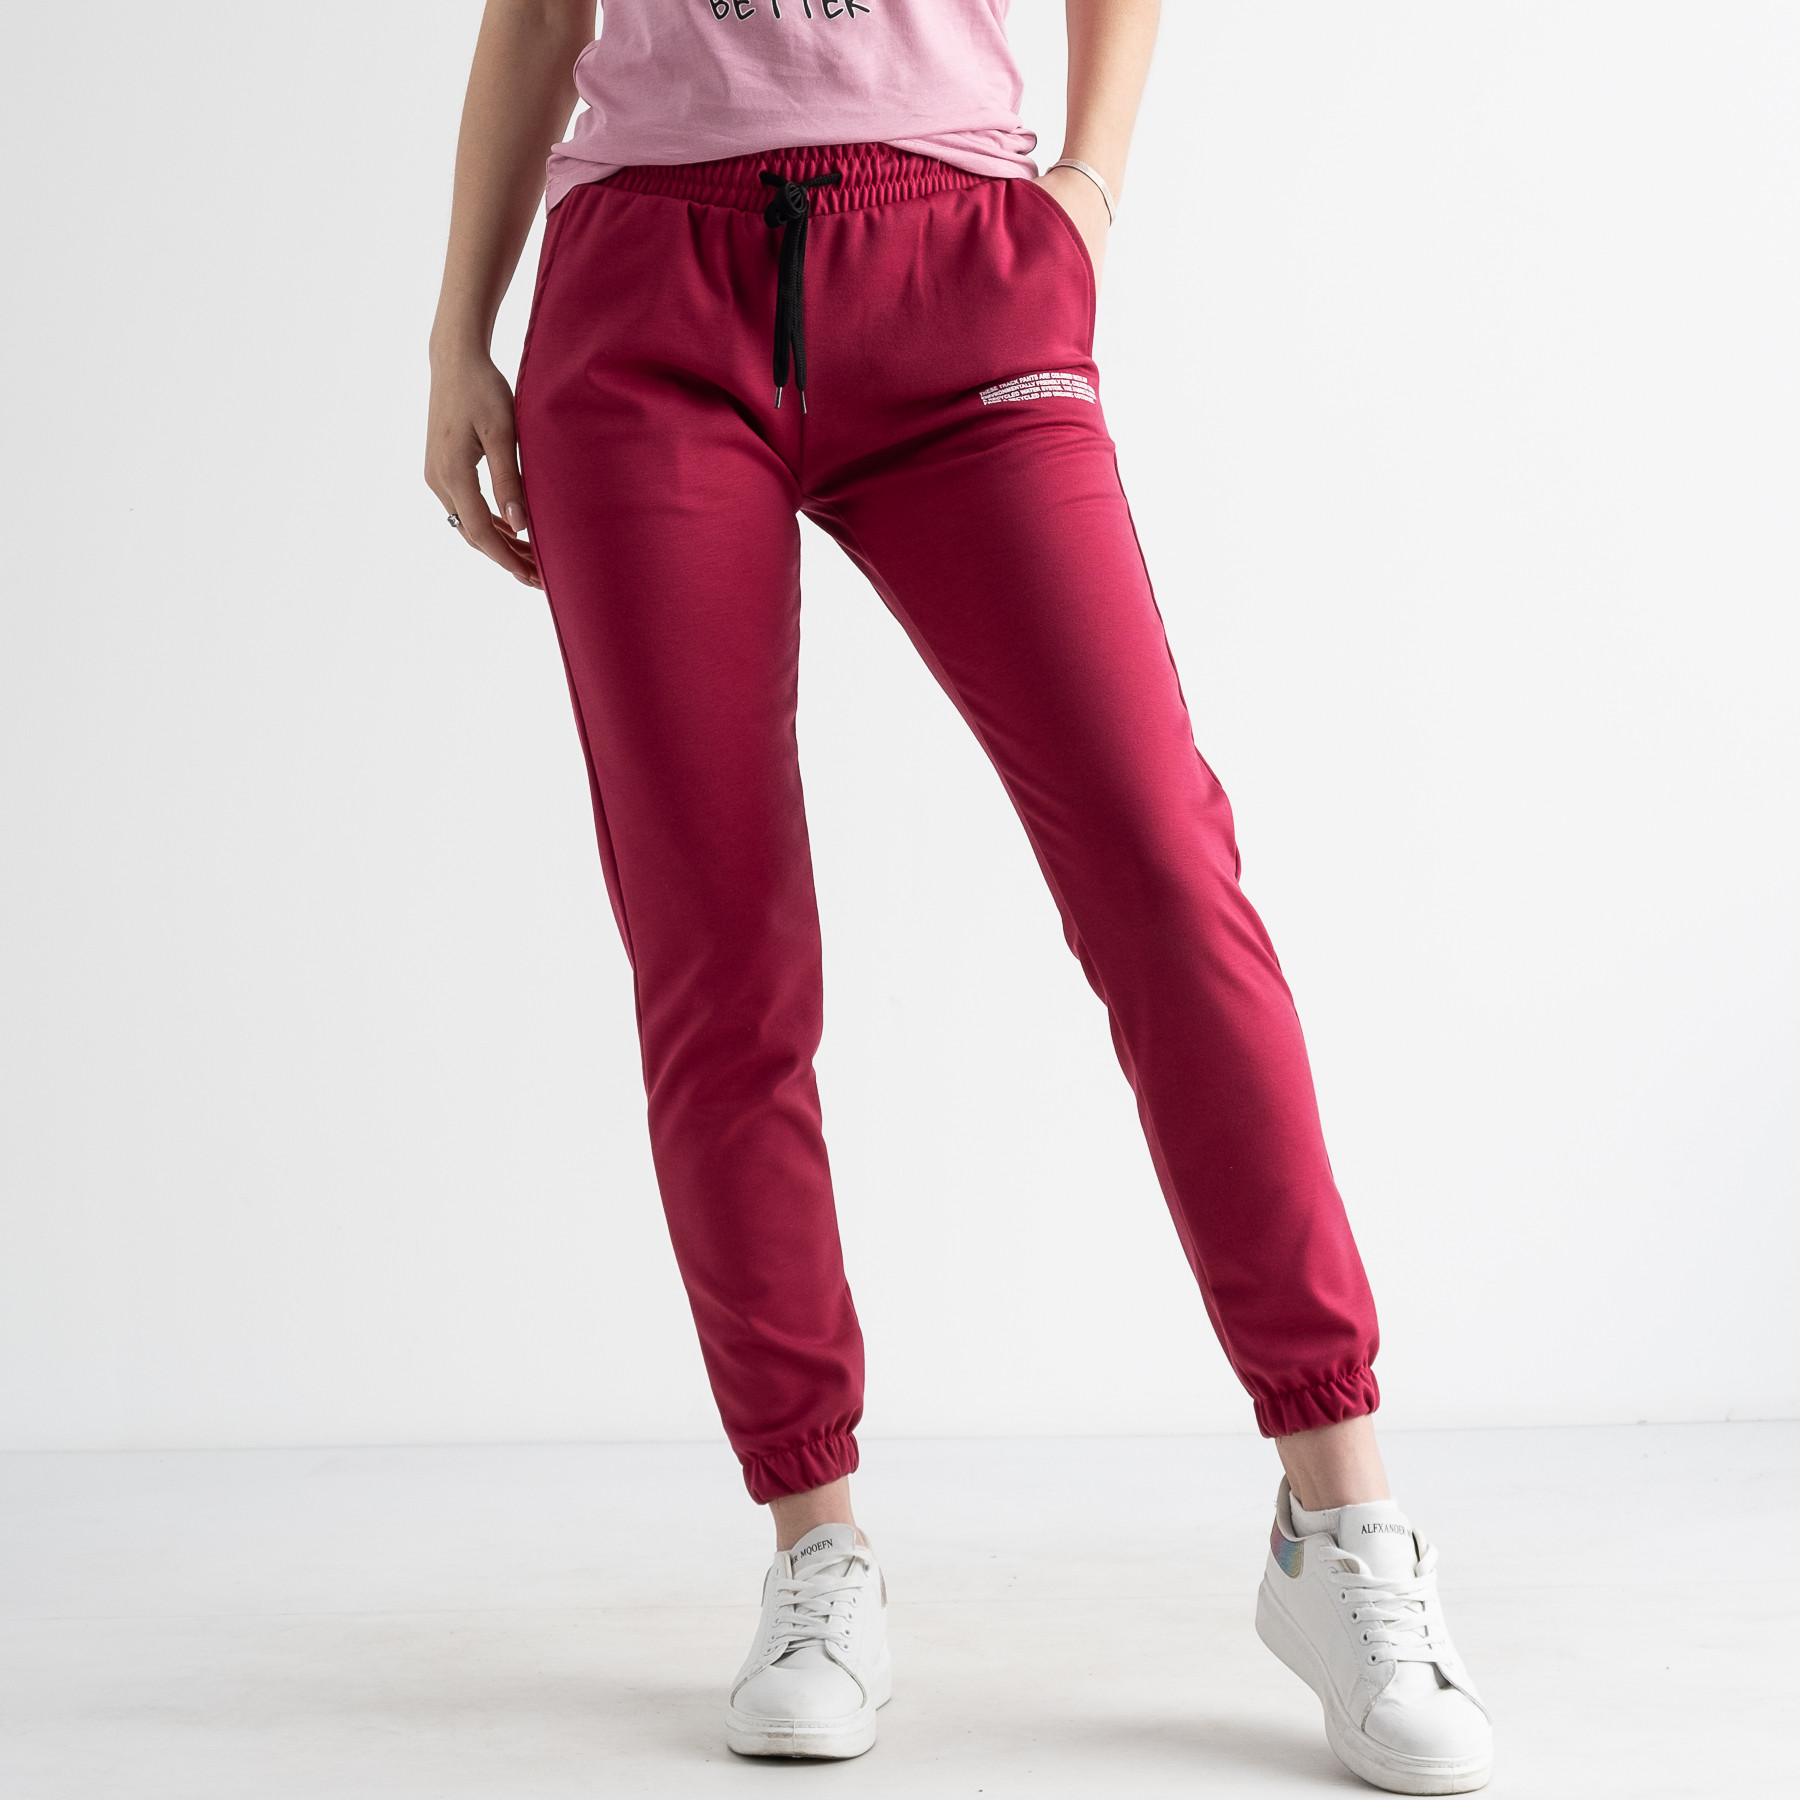 1105-4 МАЛИНОВЫЕ спортивные брюки женские из двунитки ( 4 ед размеры: S.M.L.XL)